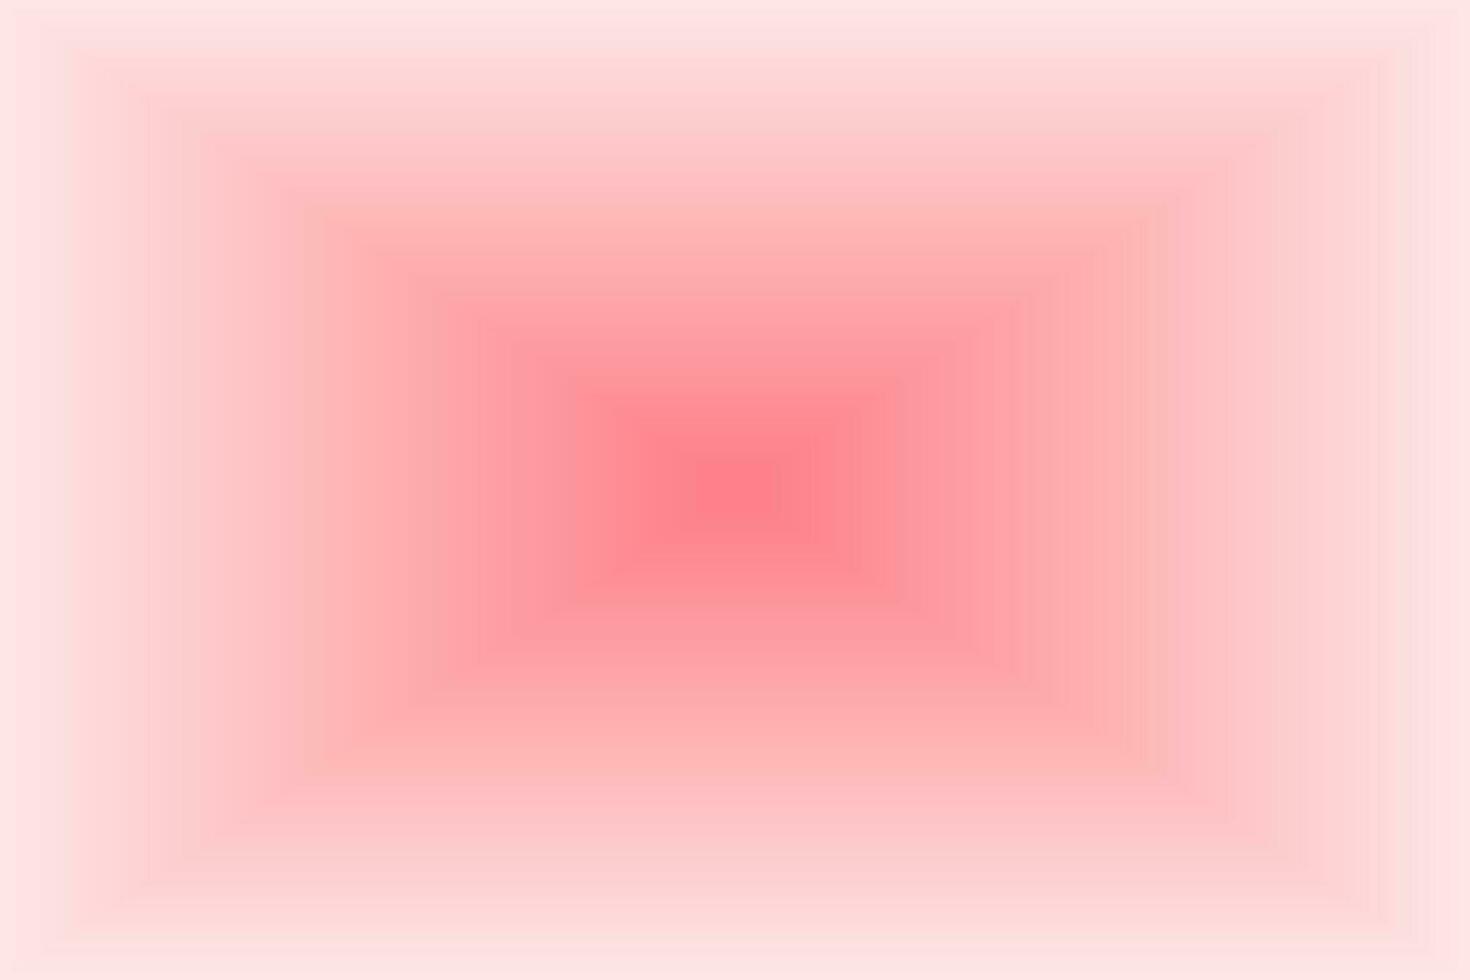 Vektor-Illustration Zusammenfassung glänzend rosa Liebe Hintergrund vektor